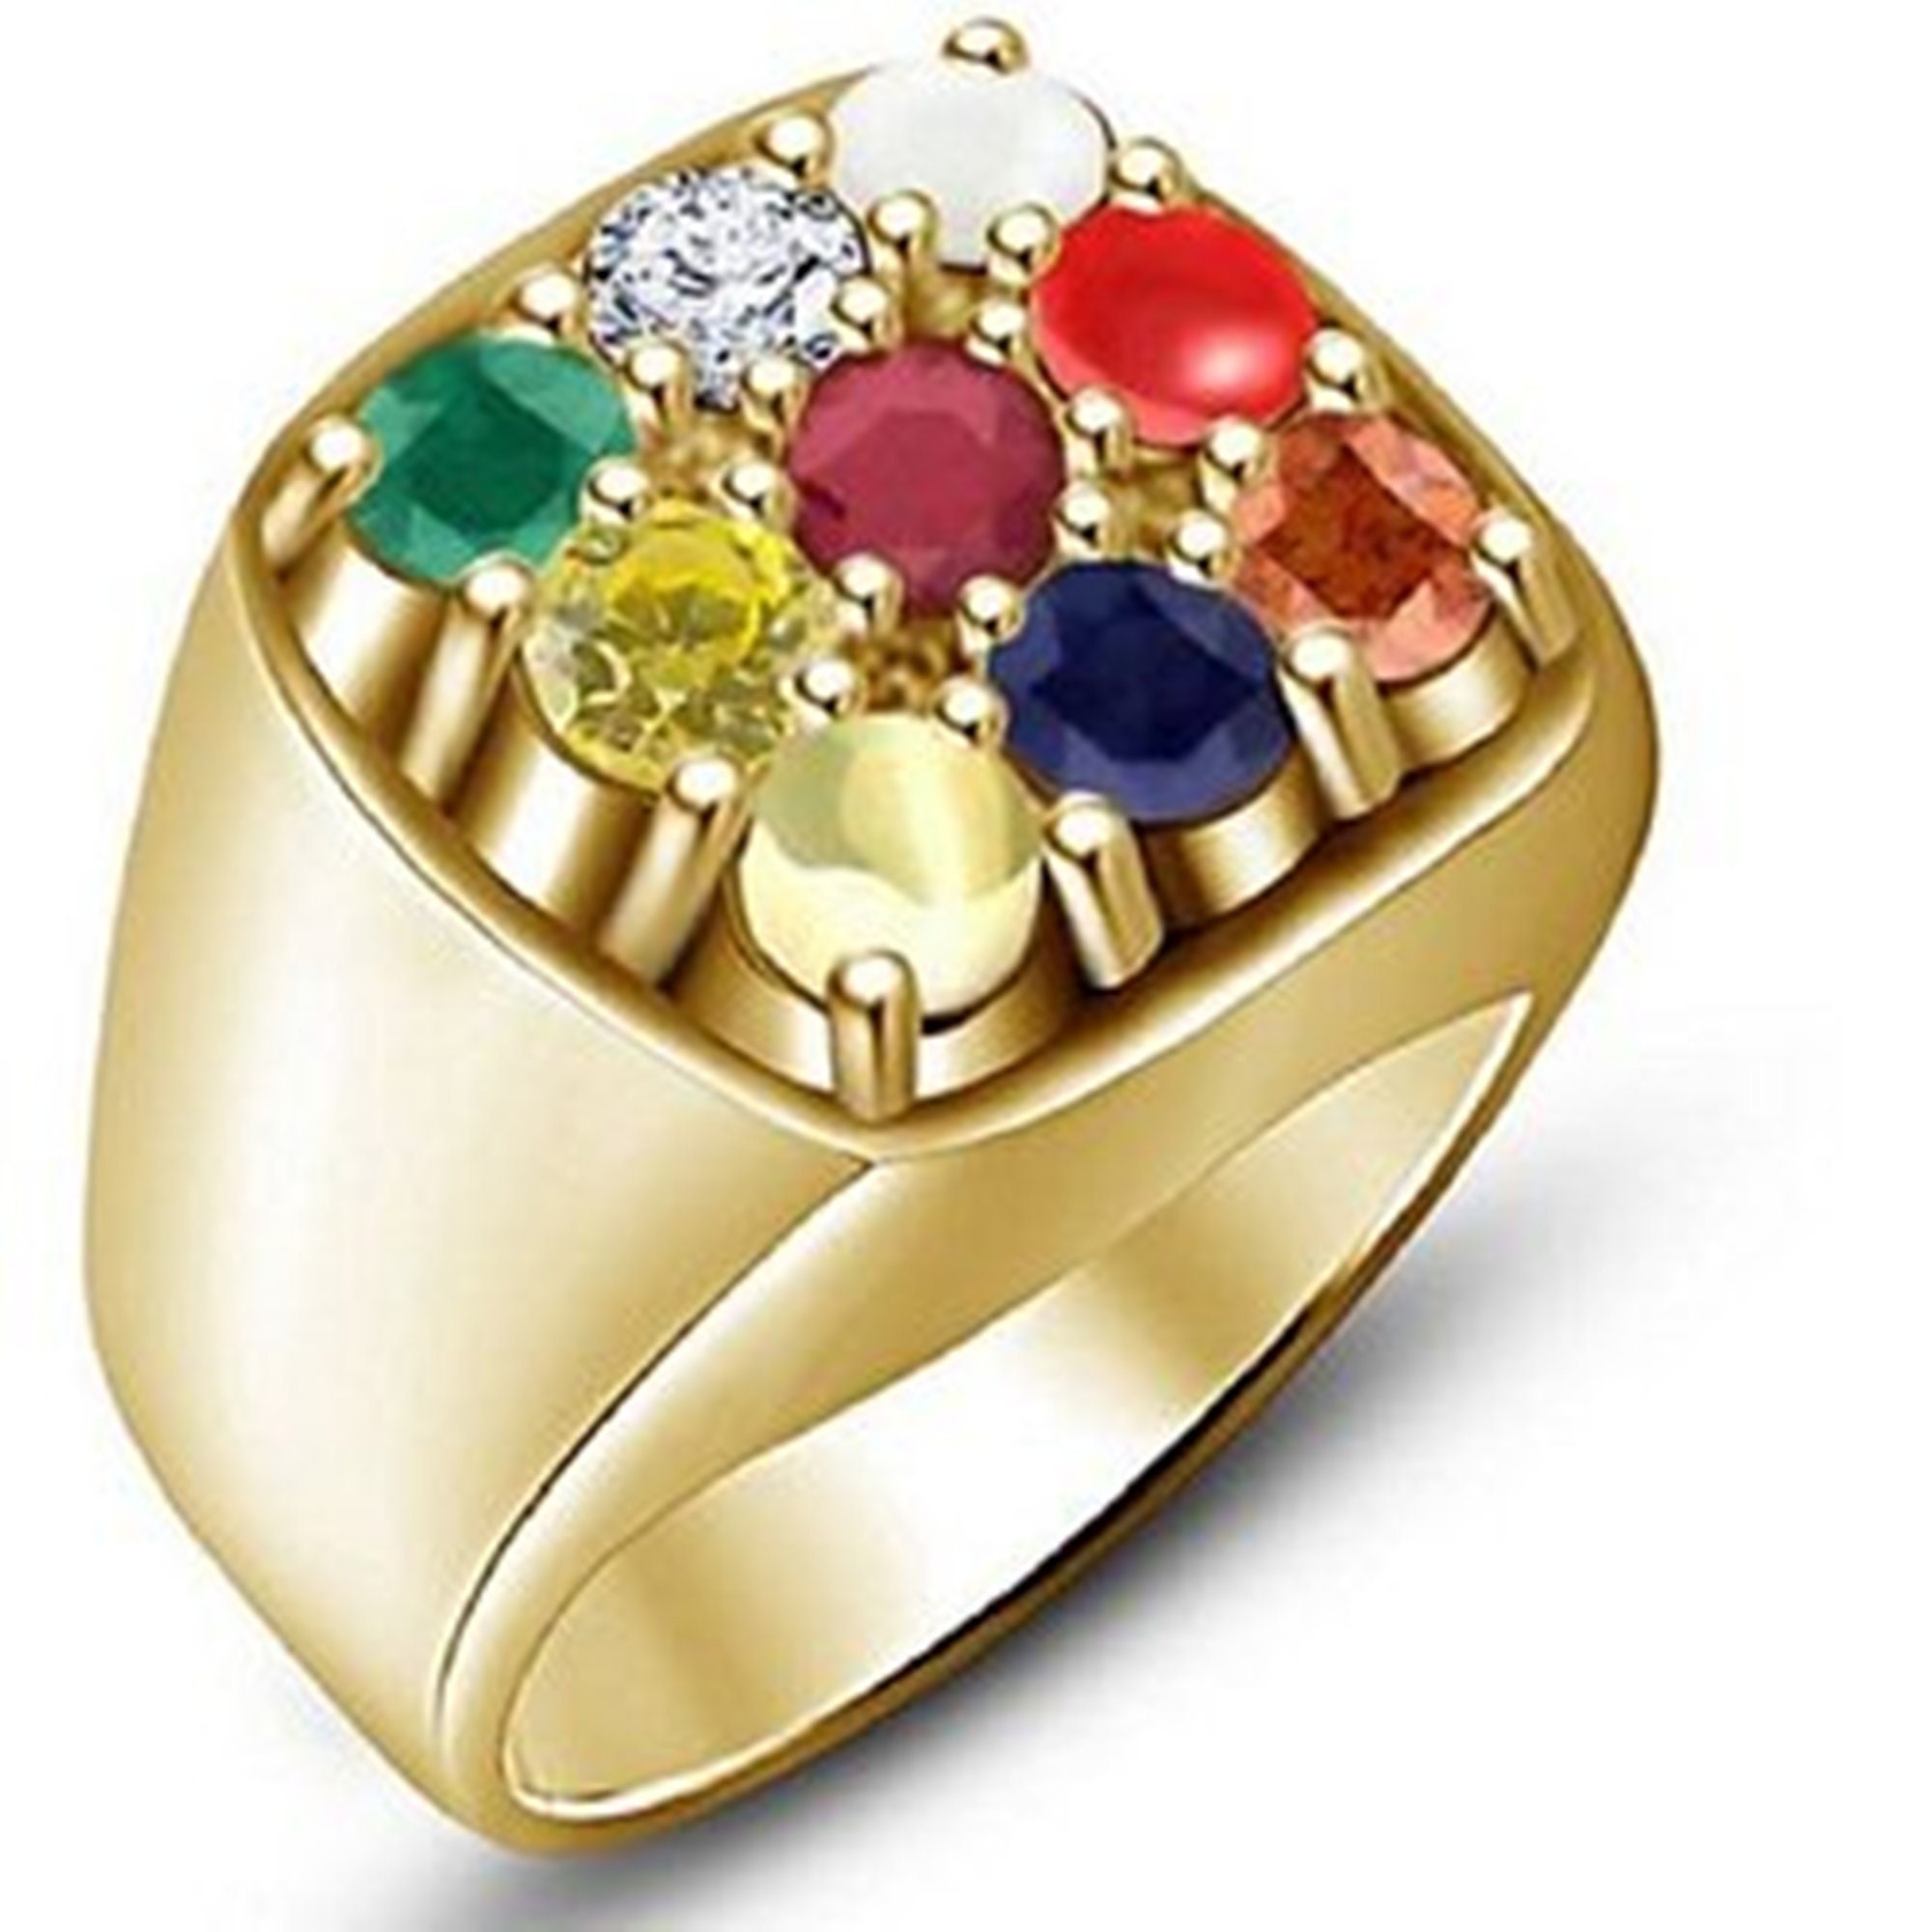 Buy Golden Navratna Ring + Chain + Bracelet (NRCB2) Online at Best Price in  India on Naaptol.com